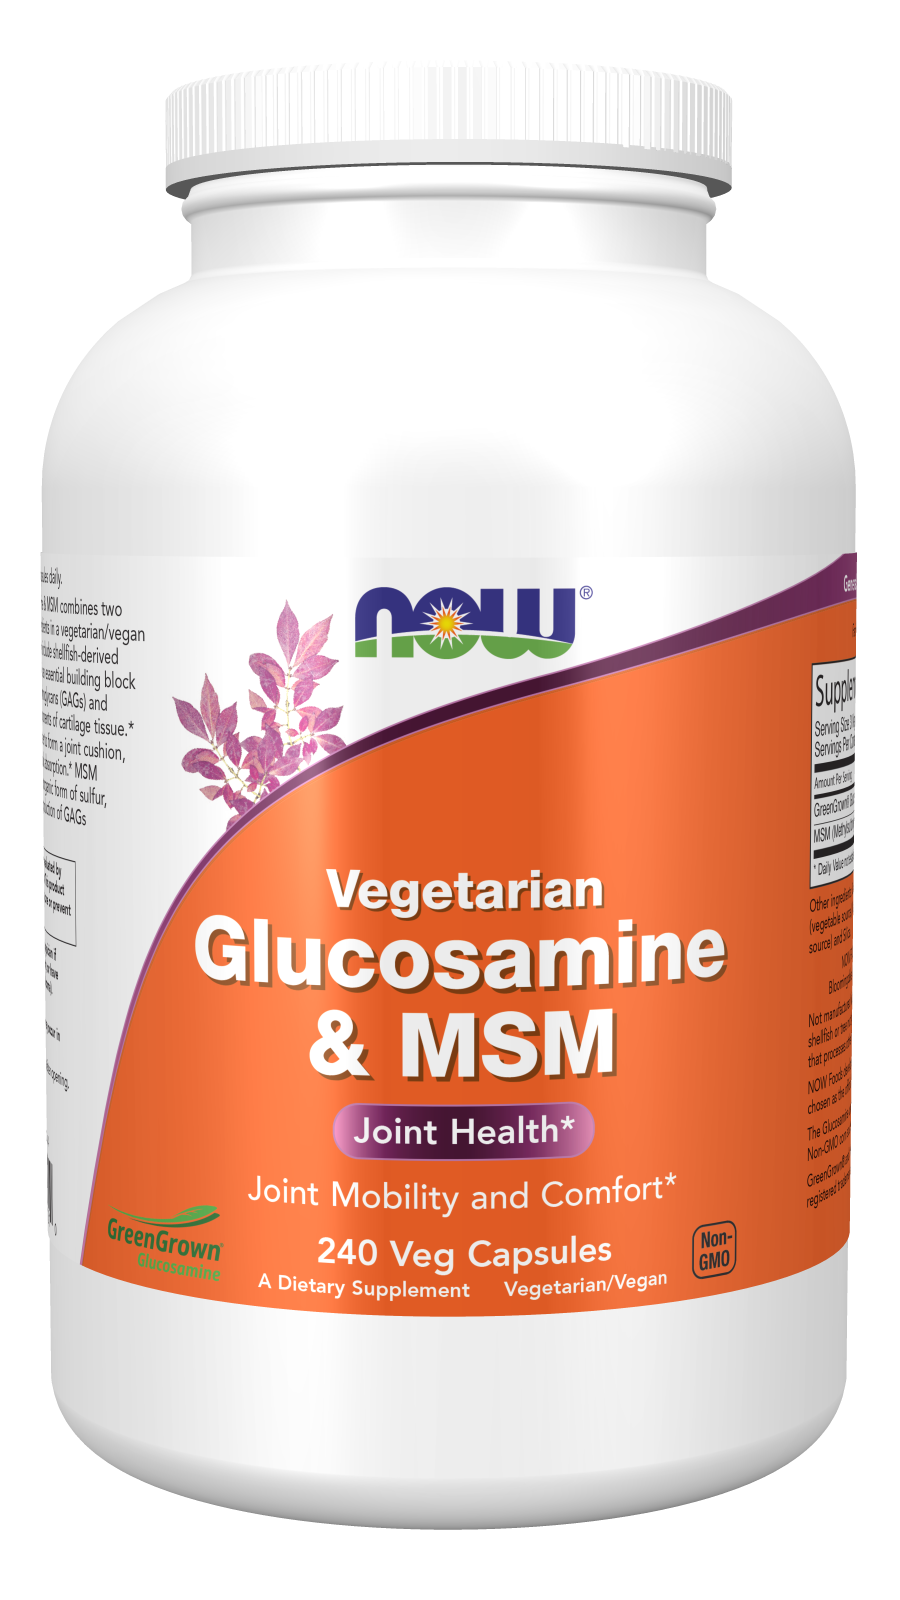 Glucosamine & MSM (Vegetarian) - 240 Veg Capsules Bottle